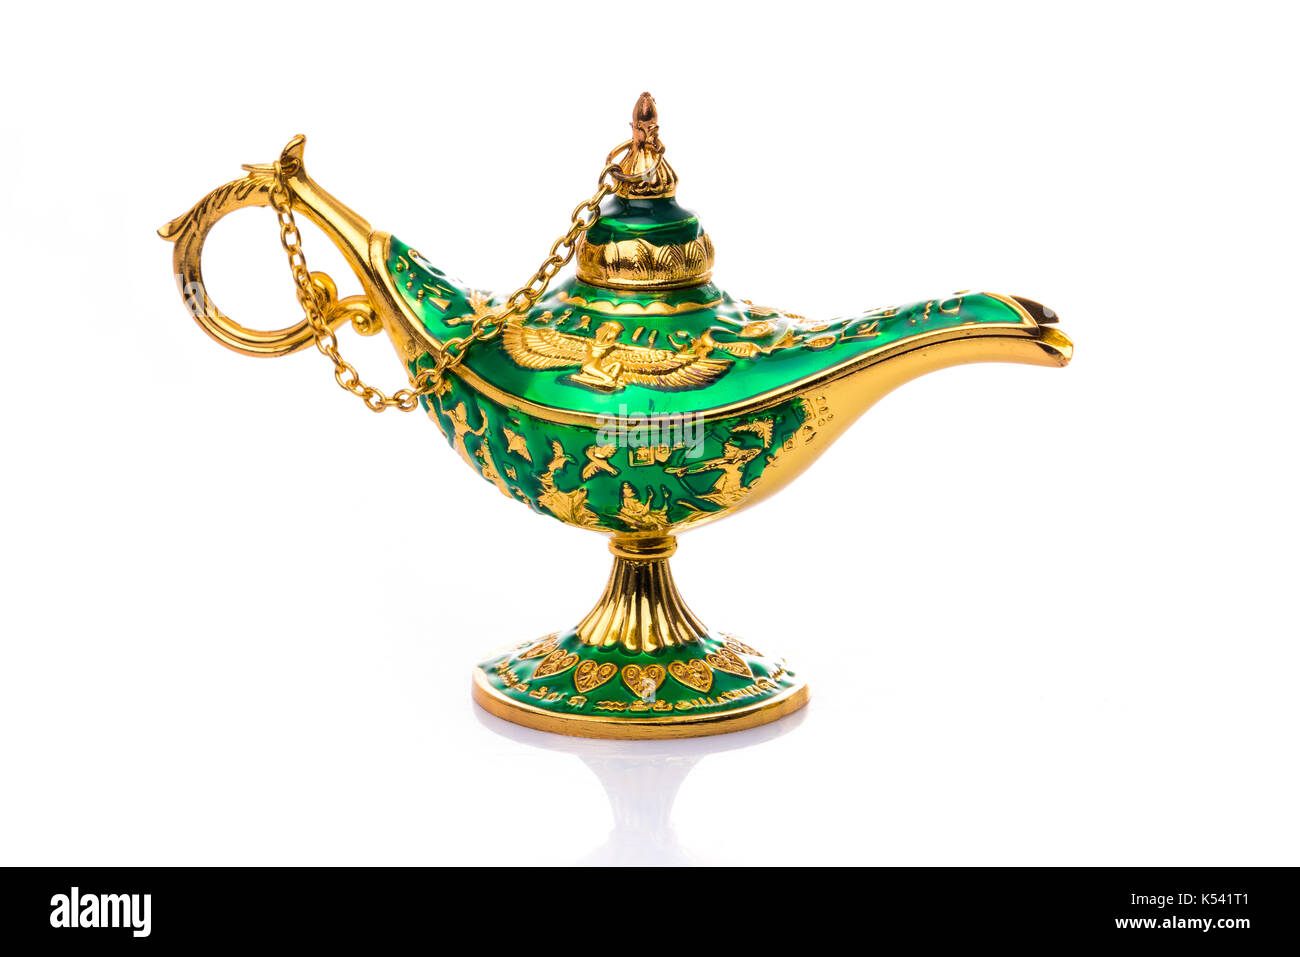 Vintage Lampe von Aladdin. Alte Öllampe. Alte Lampe. Genie Lampe genannt auch Aladins Wunderlampe mit pharaonischen Symbole Stockfoto